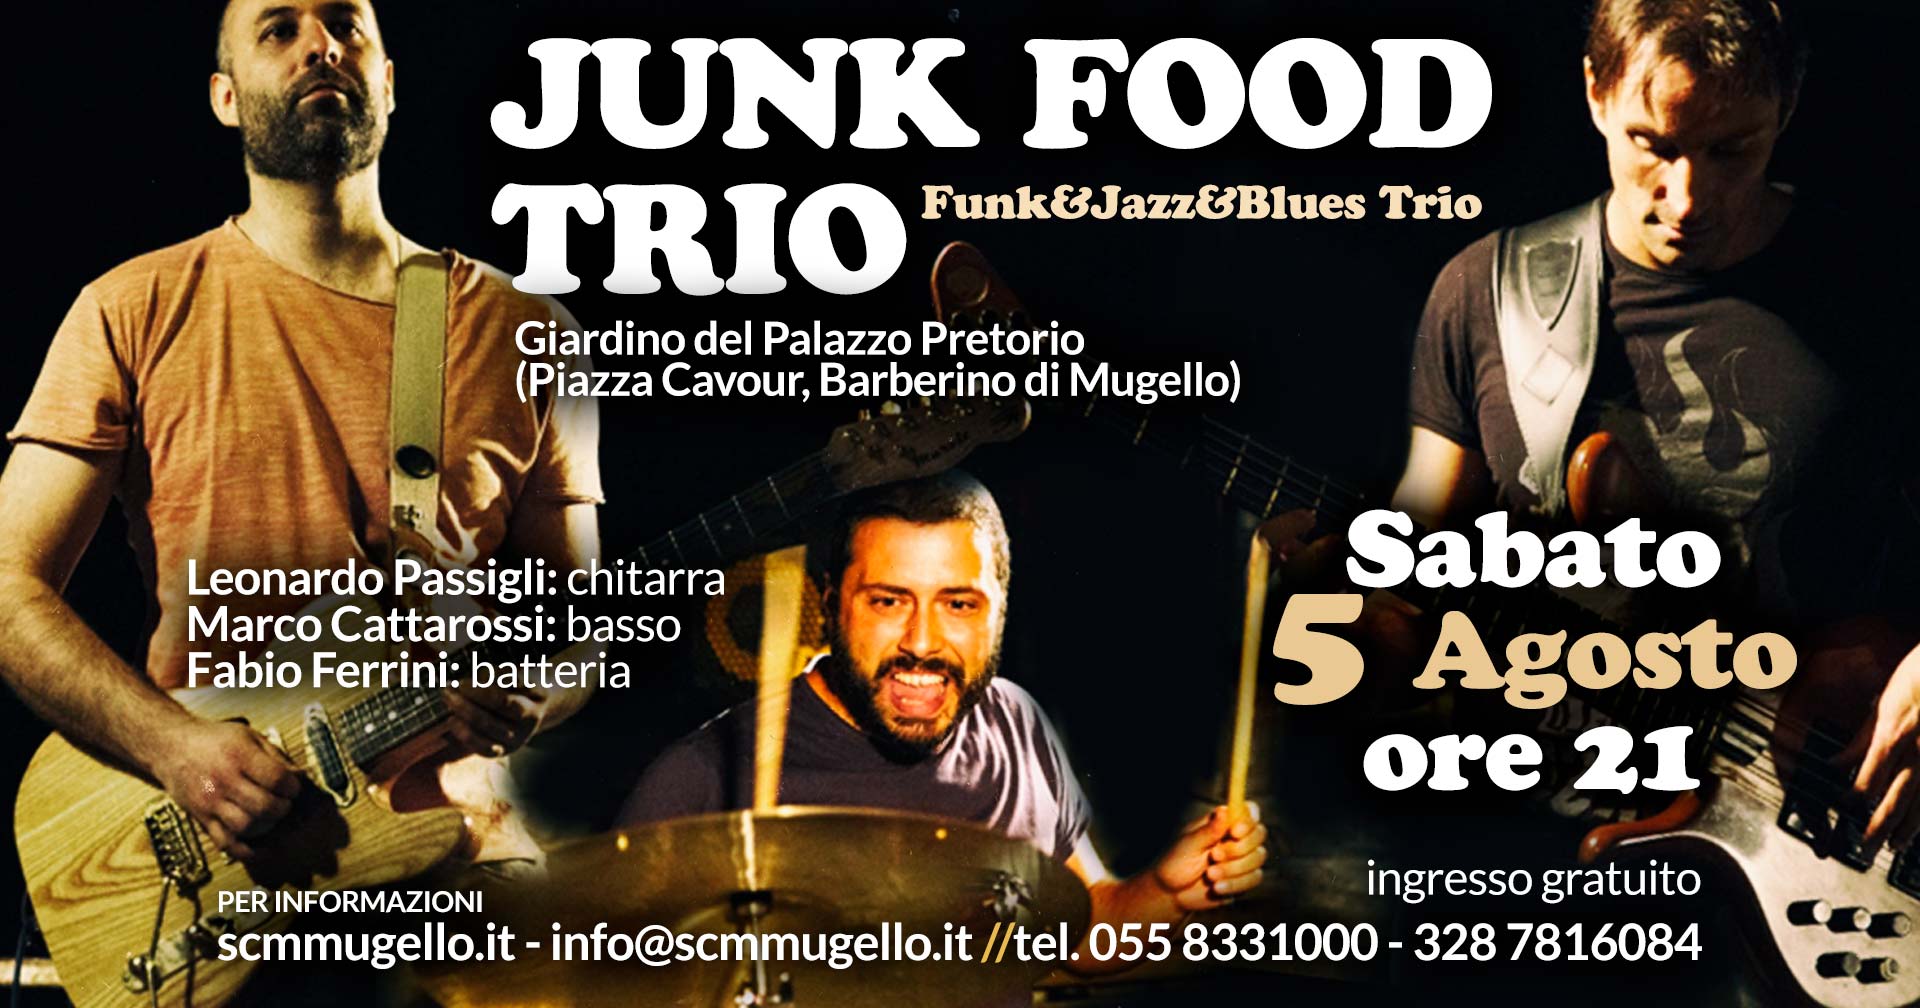 Junk Food Trio Palazzo Pretorio Barberino di Mugello Sabato 5 Agosto ore 21